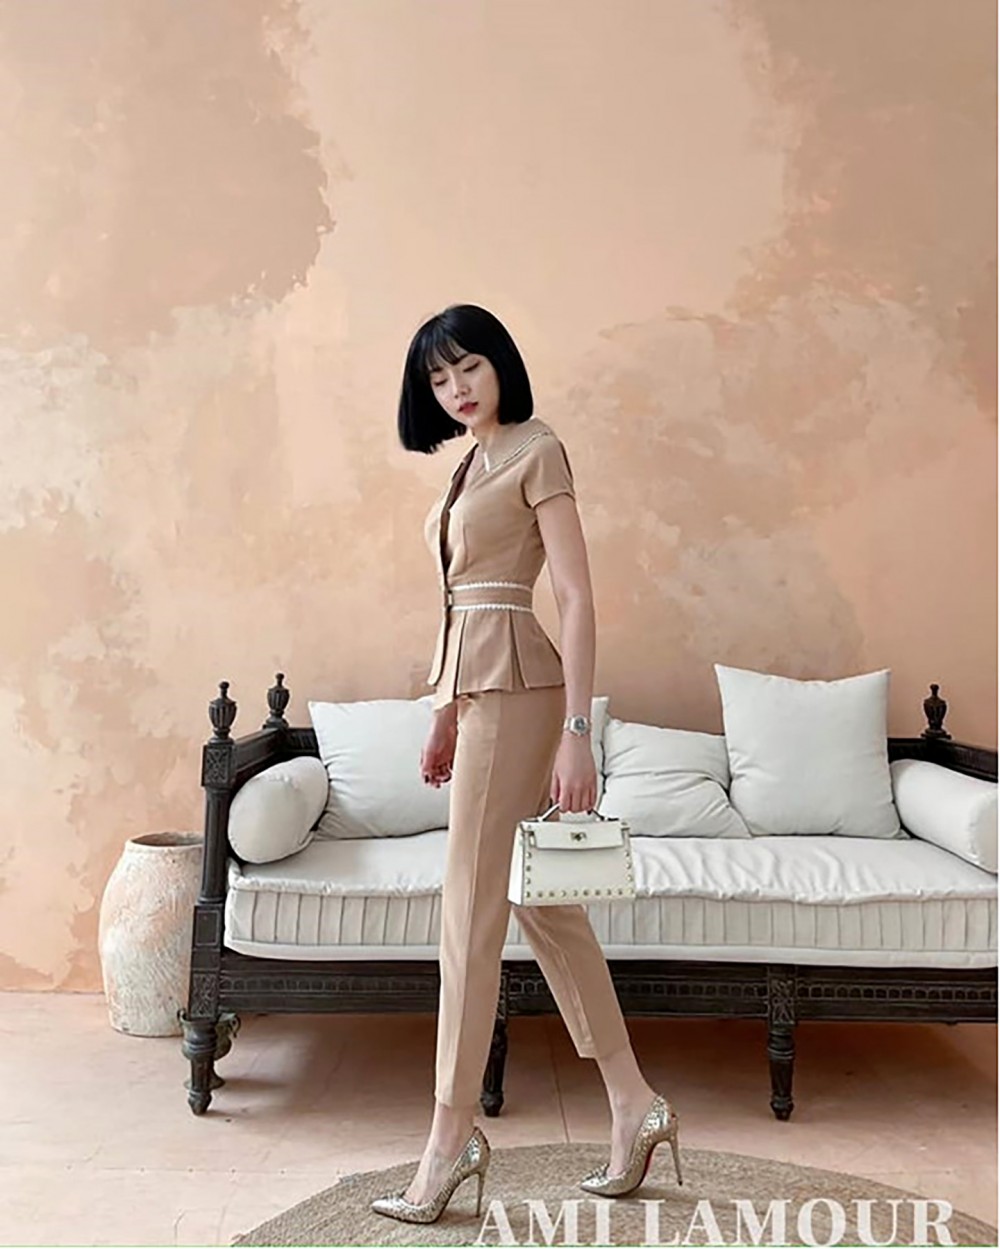 Ami Lamour – Thương hiệu thời trang thiết kế cao cấp dành cho phái đẹp